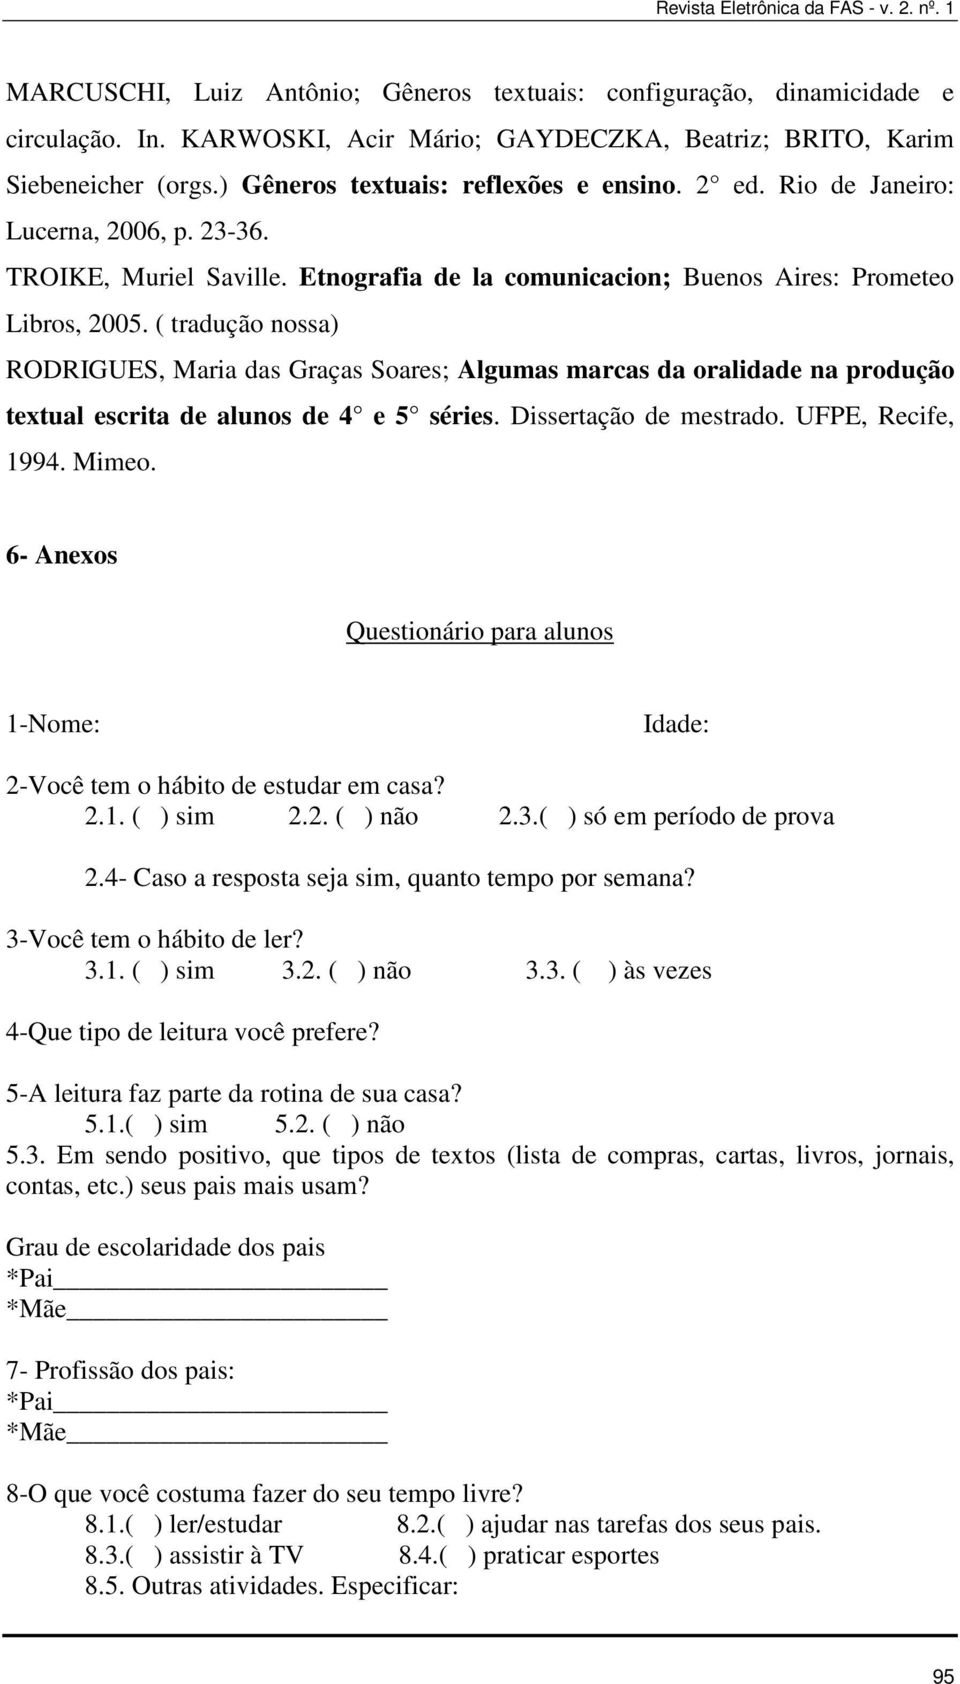 ( tradução nossa) RODRIGUES, Maria das Graças Soares; Algumas marcas da oralidade na produção textual escrita de alunos de 4 e 5 séries. Dissertação de mestrado. UFPE, Recife, 1994. Mimeo.